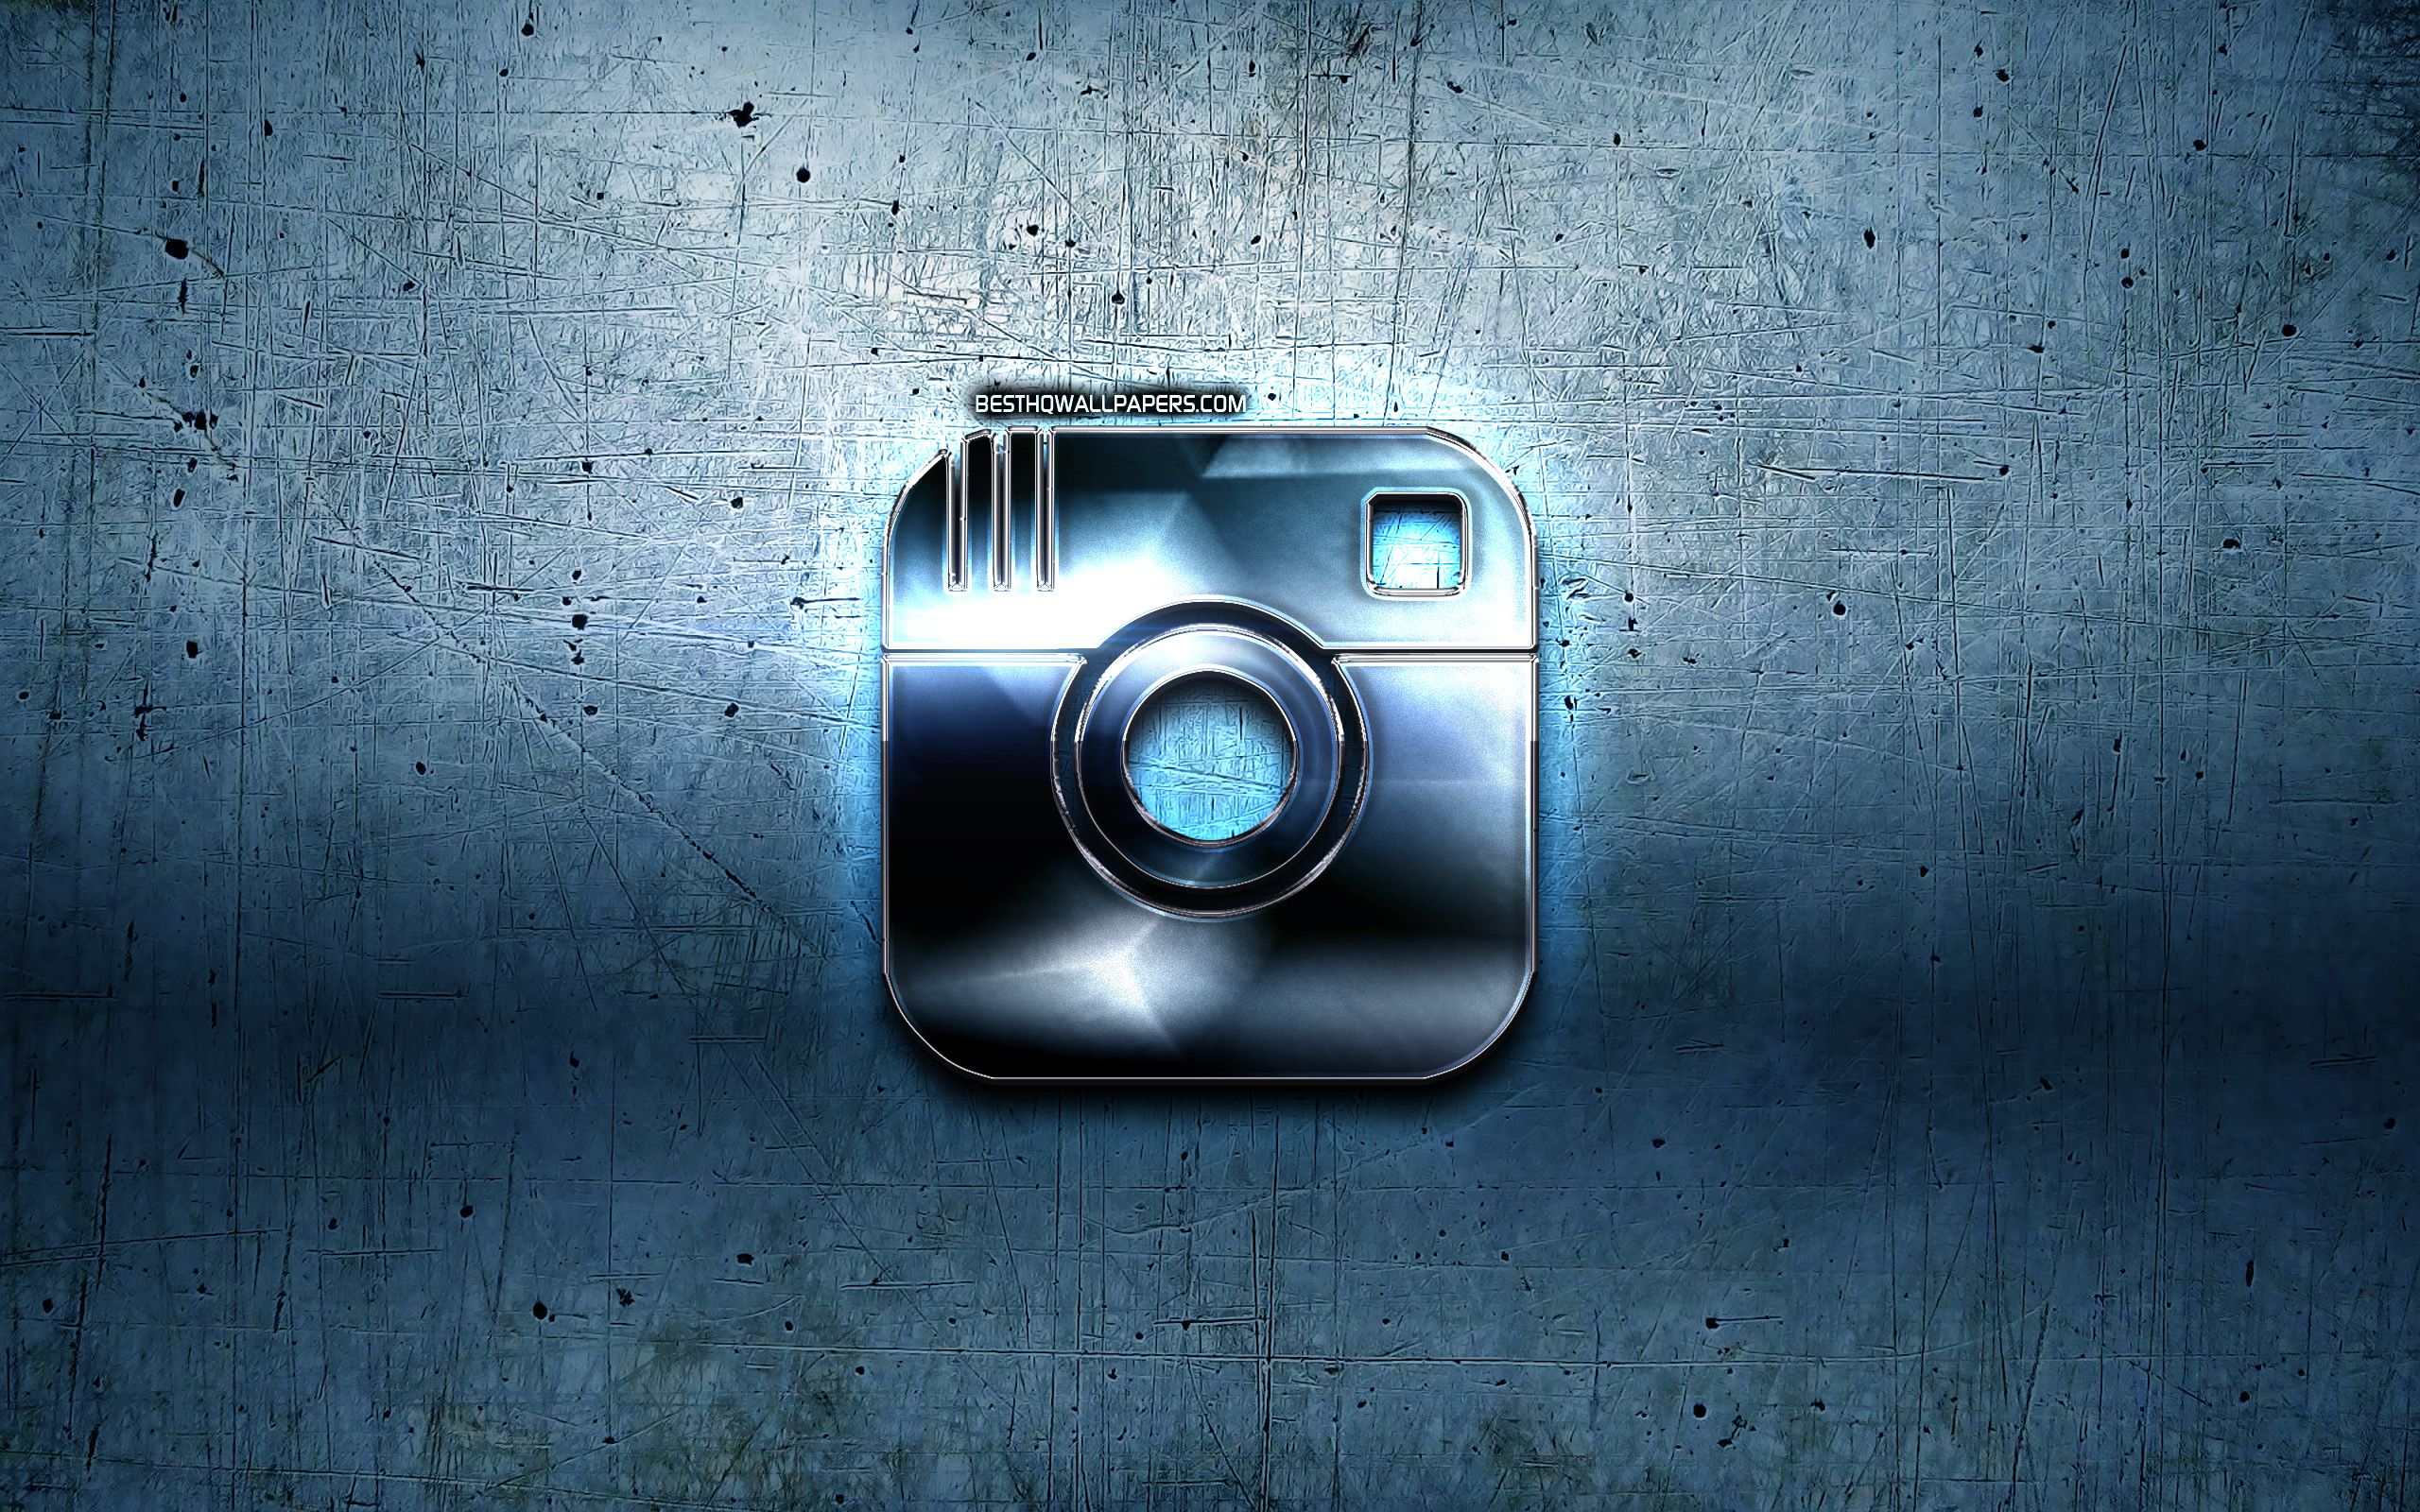 Hinh nền Instagram giúp cho tài khoản của bạn thêm phần sinh động và bắt mắt. Bạn có thể tùy chỉnh hình nền theo sở thích của mình để gây ấn tượng mạnh mẽ với người xem. Hãy nhấn vào ảnh để xem thêm những hình nền đẹp cho tài khoản Instagram của bạn. 